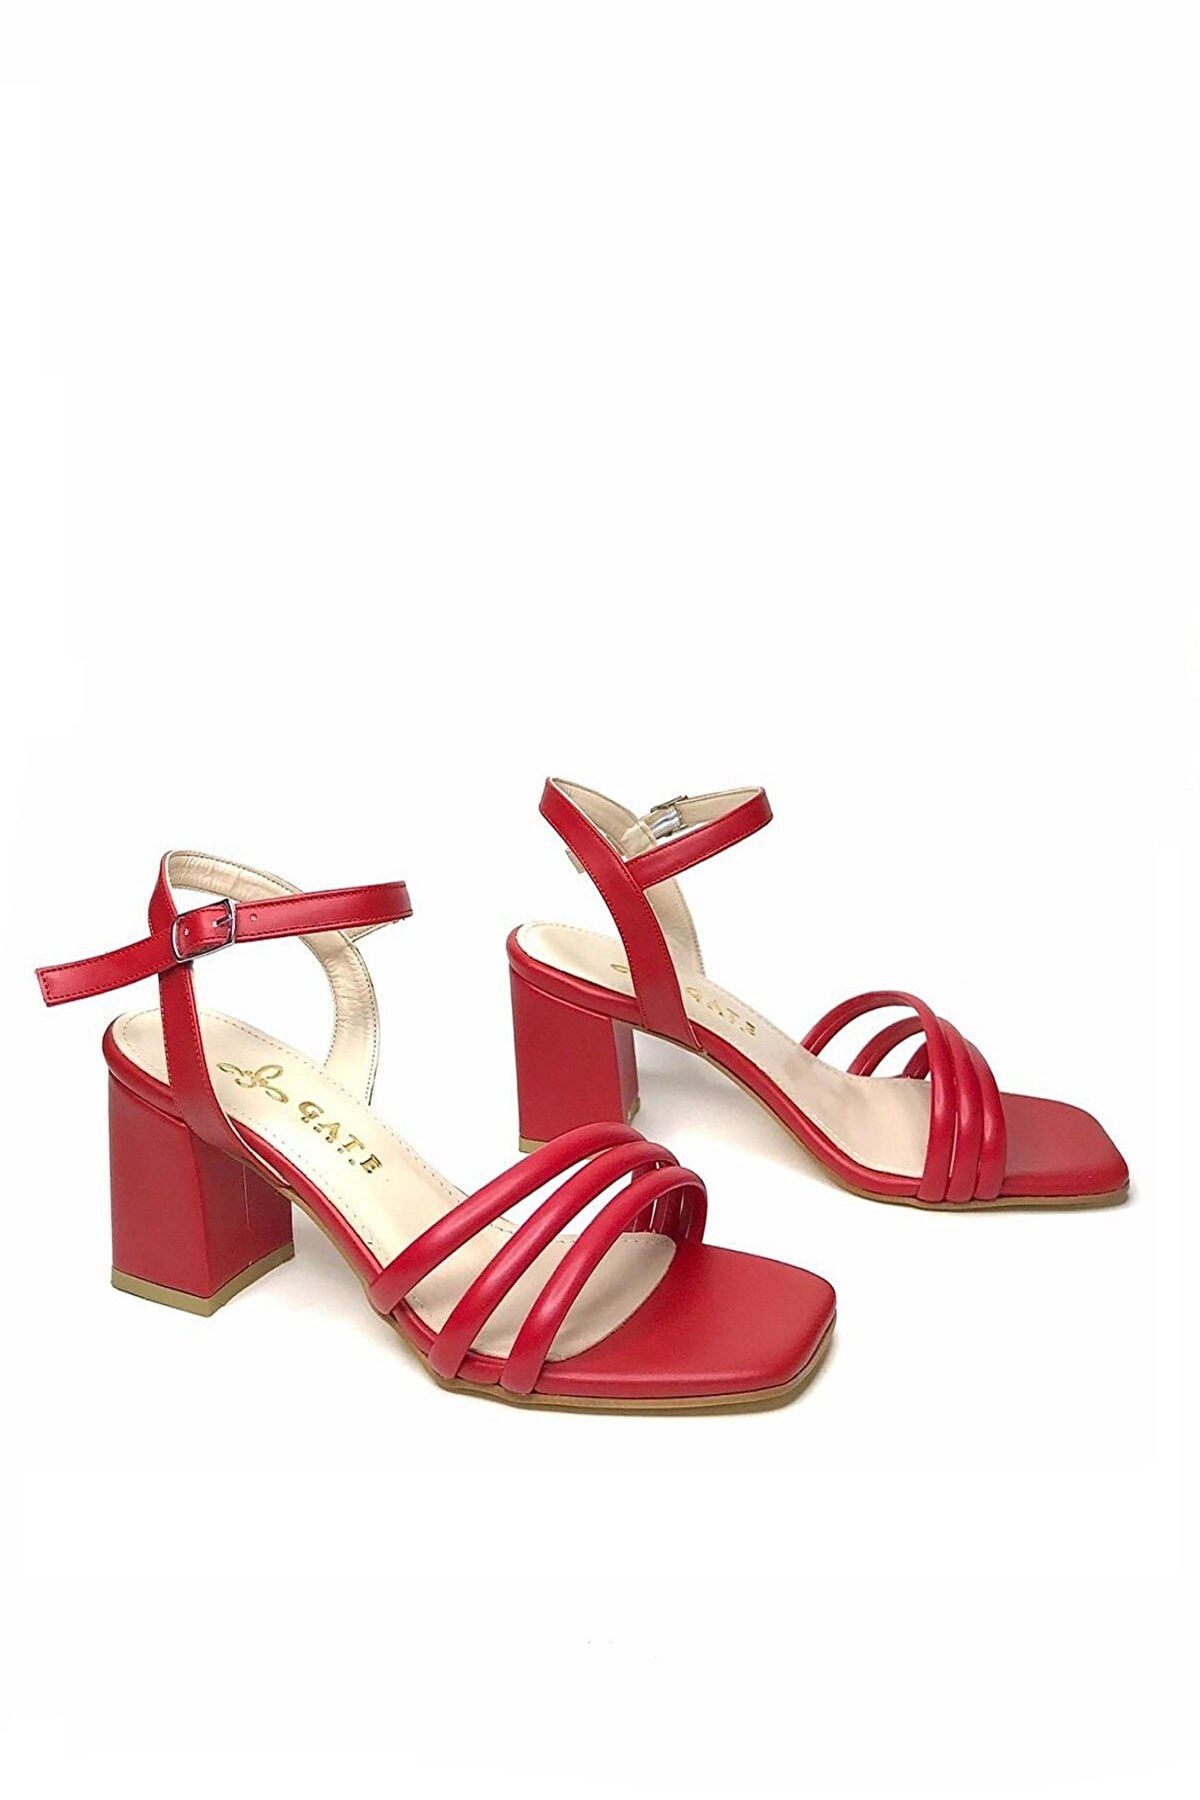 Kadın Bantlı Topuklu Ayakkabı Sandalet Luis Gate Shoes-Kırmızı